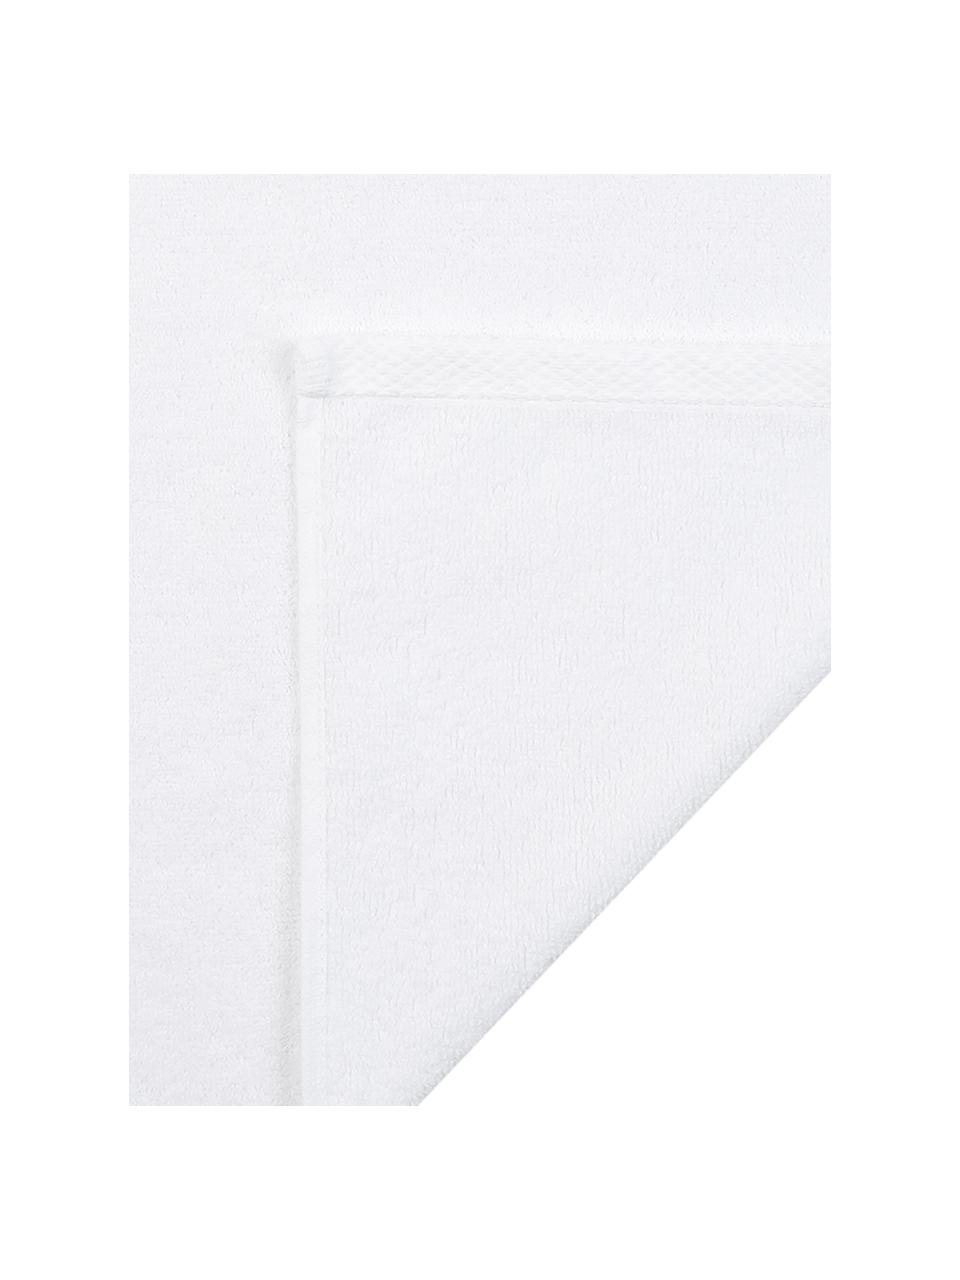 Lot de serviettes de bain unicolore Comfort, 3 élém., 100 % coton
Grammage intermédiaire 450 g/m², Blanc, Lot de différentes tailles